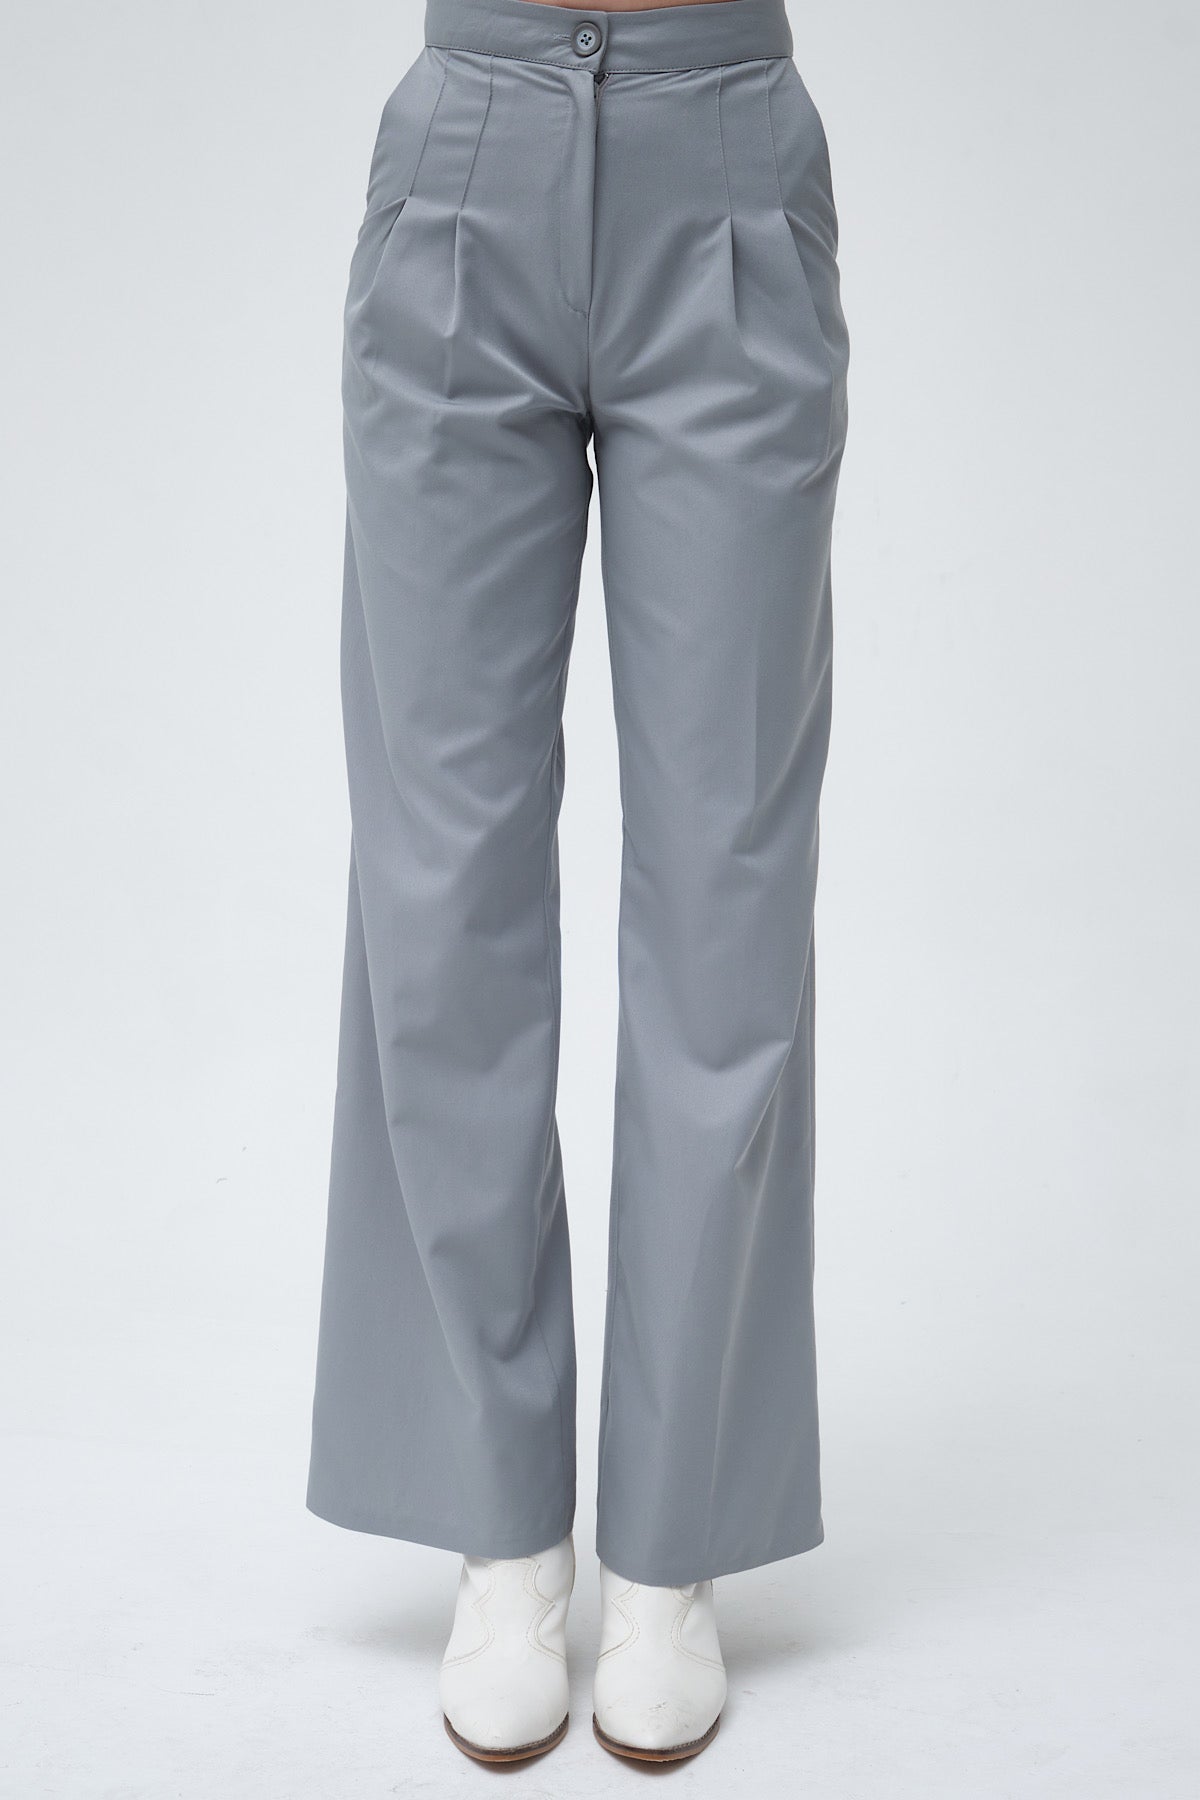 San Pedro Grey Pants